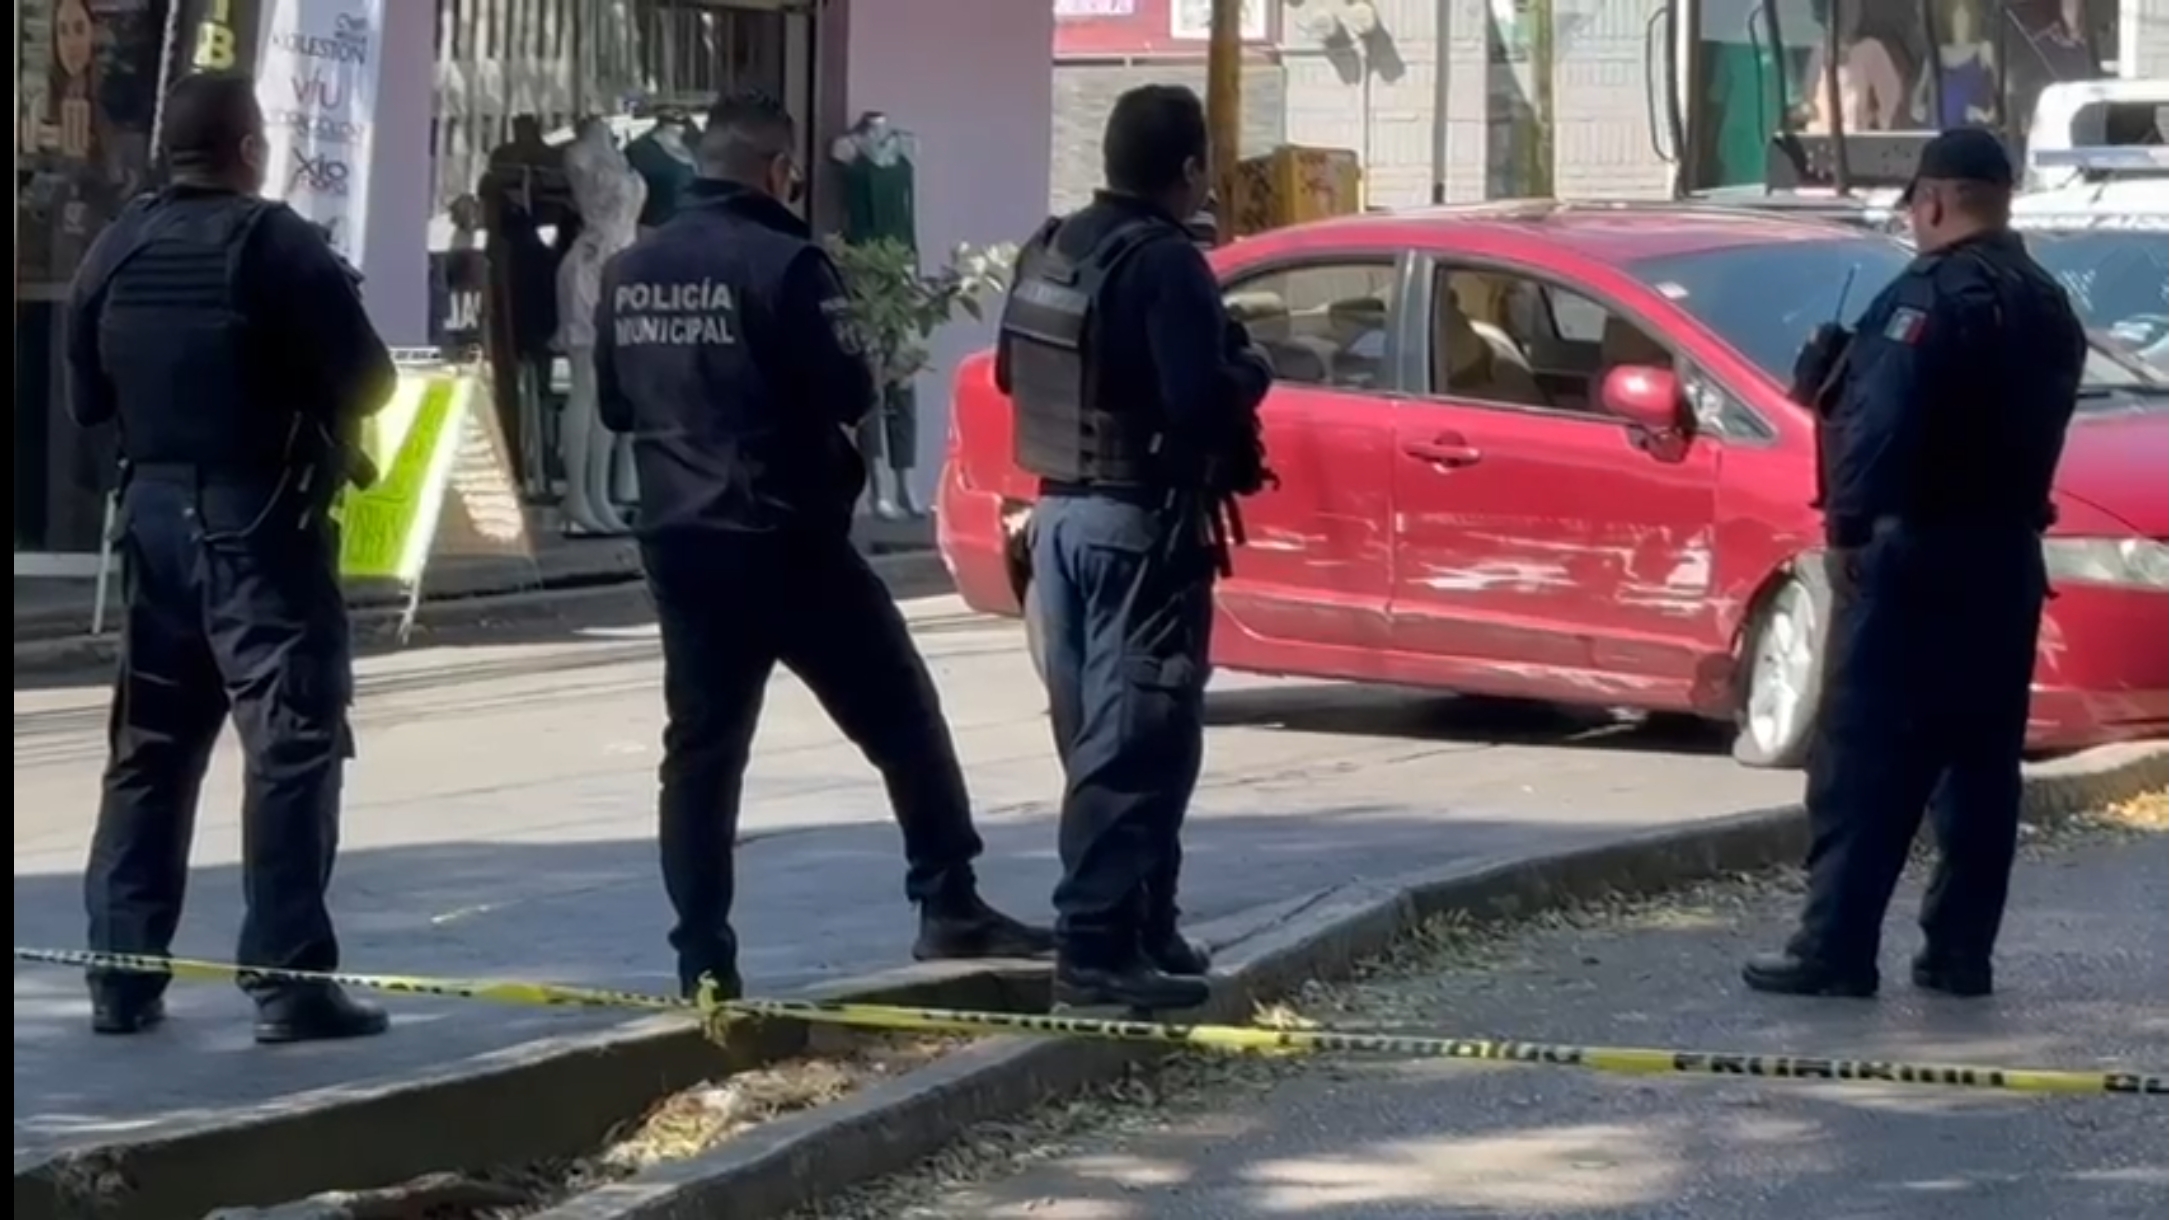 LADRONES DE AUTOPARTES DETENIDOS EN CUERNAVACA, NO SON DE MORELOS: SEPRAC